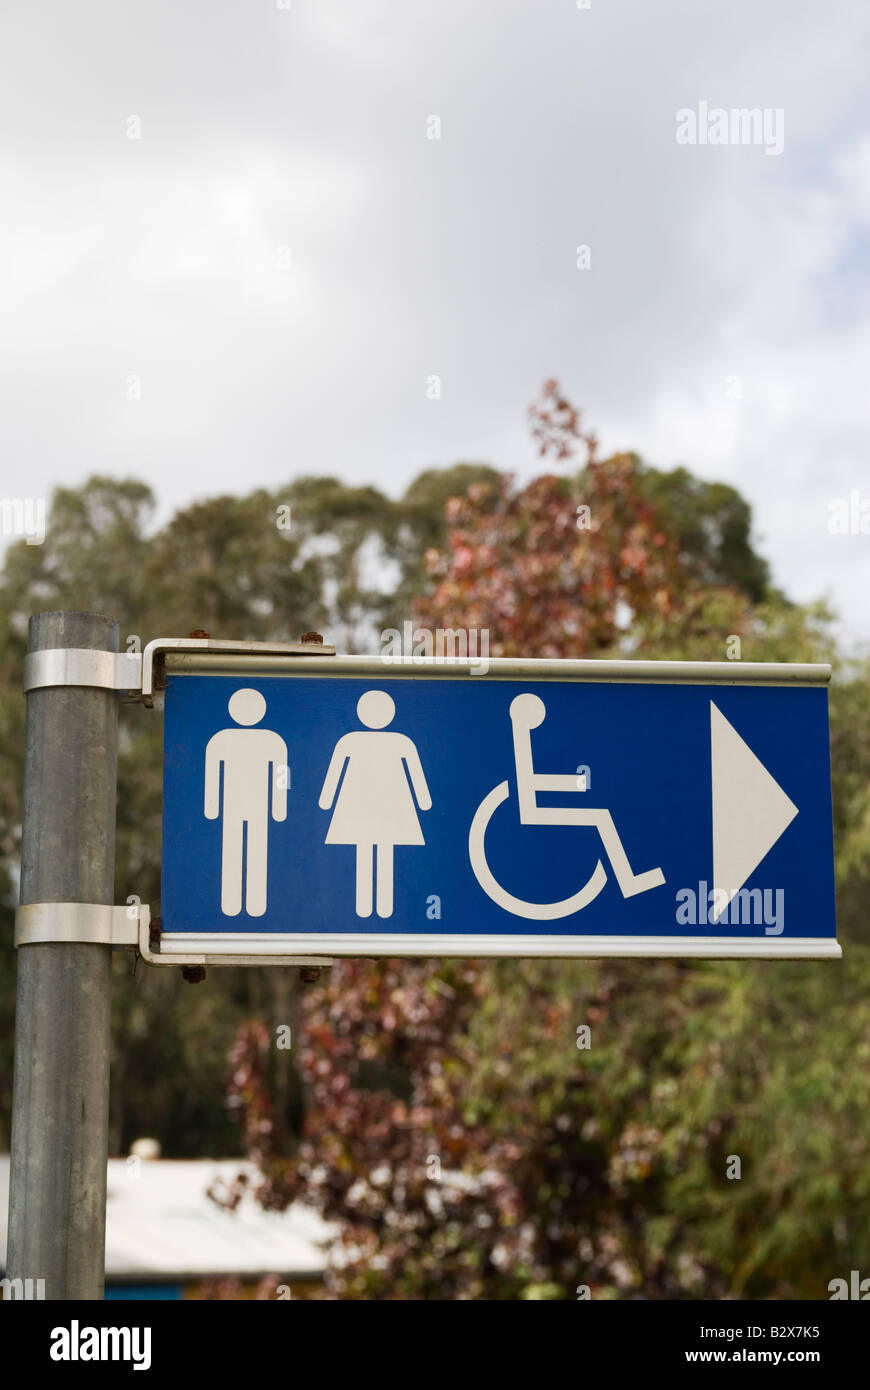 Inscrivez-vous à les orienter vers l'emplacement des toilettes publiques avec des images d'hommes, les femmes et les personnes handicapées Banque D'Images